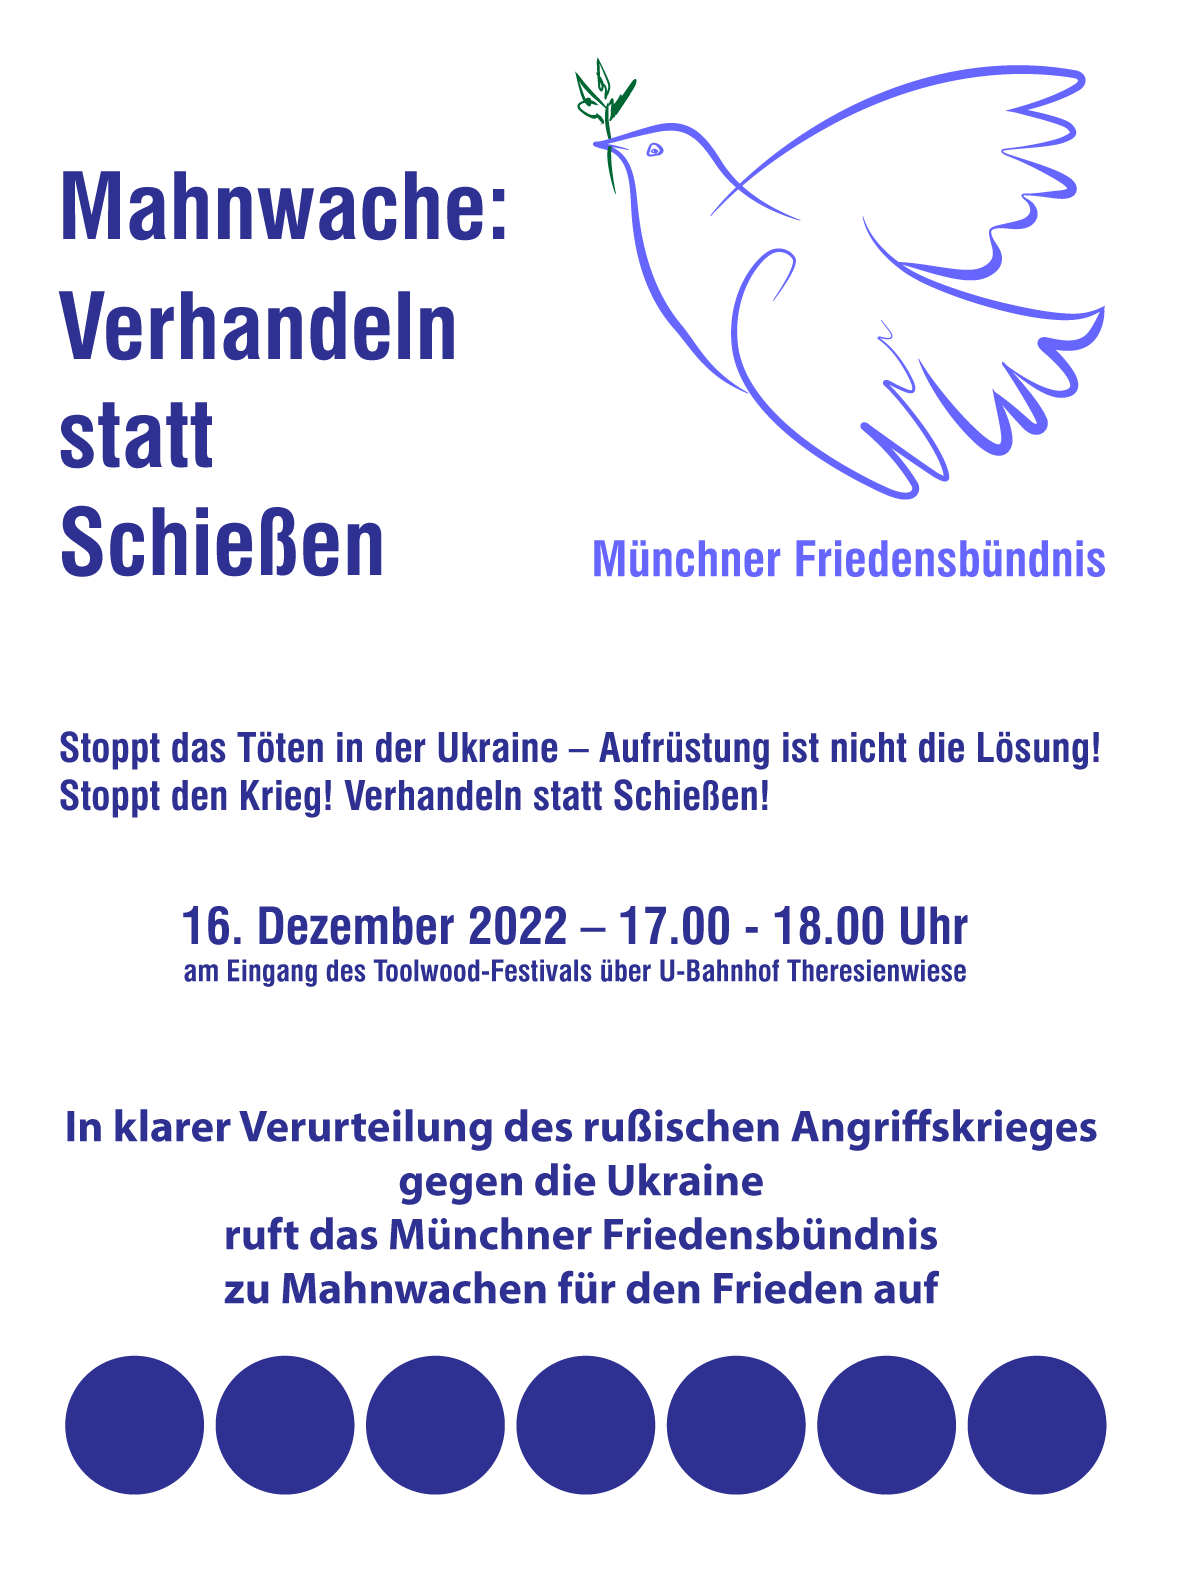 Mahnwache München, Münchner Friedensbündnis.